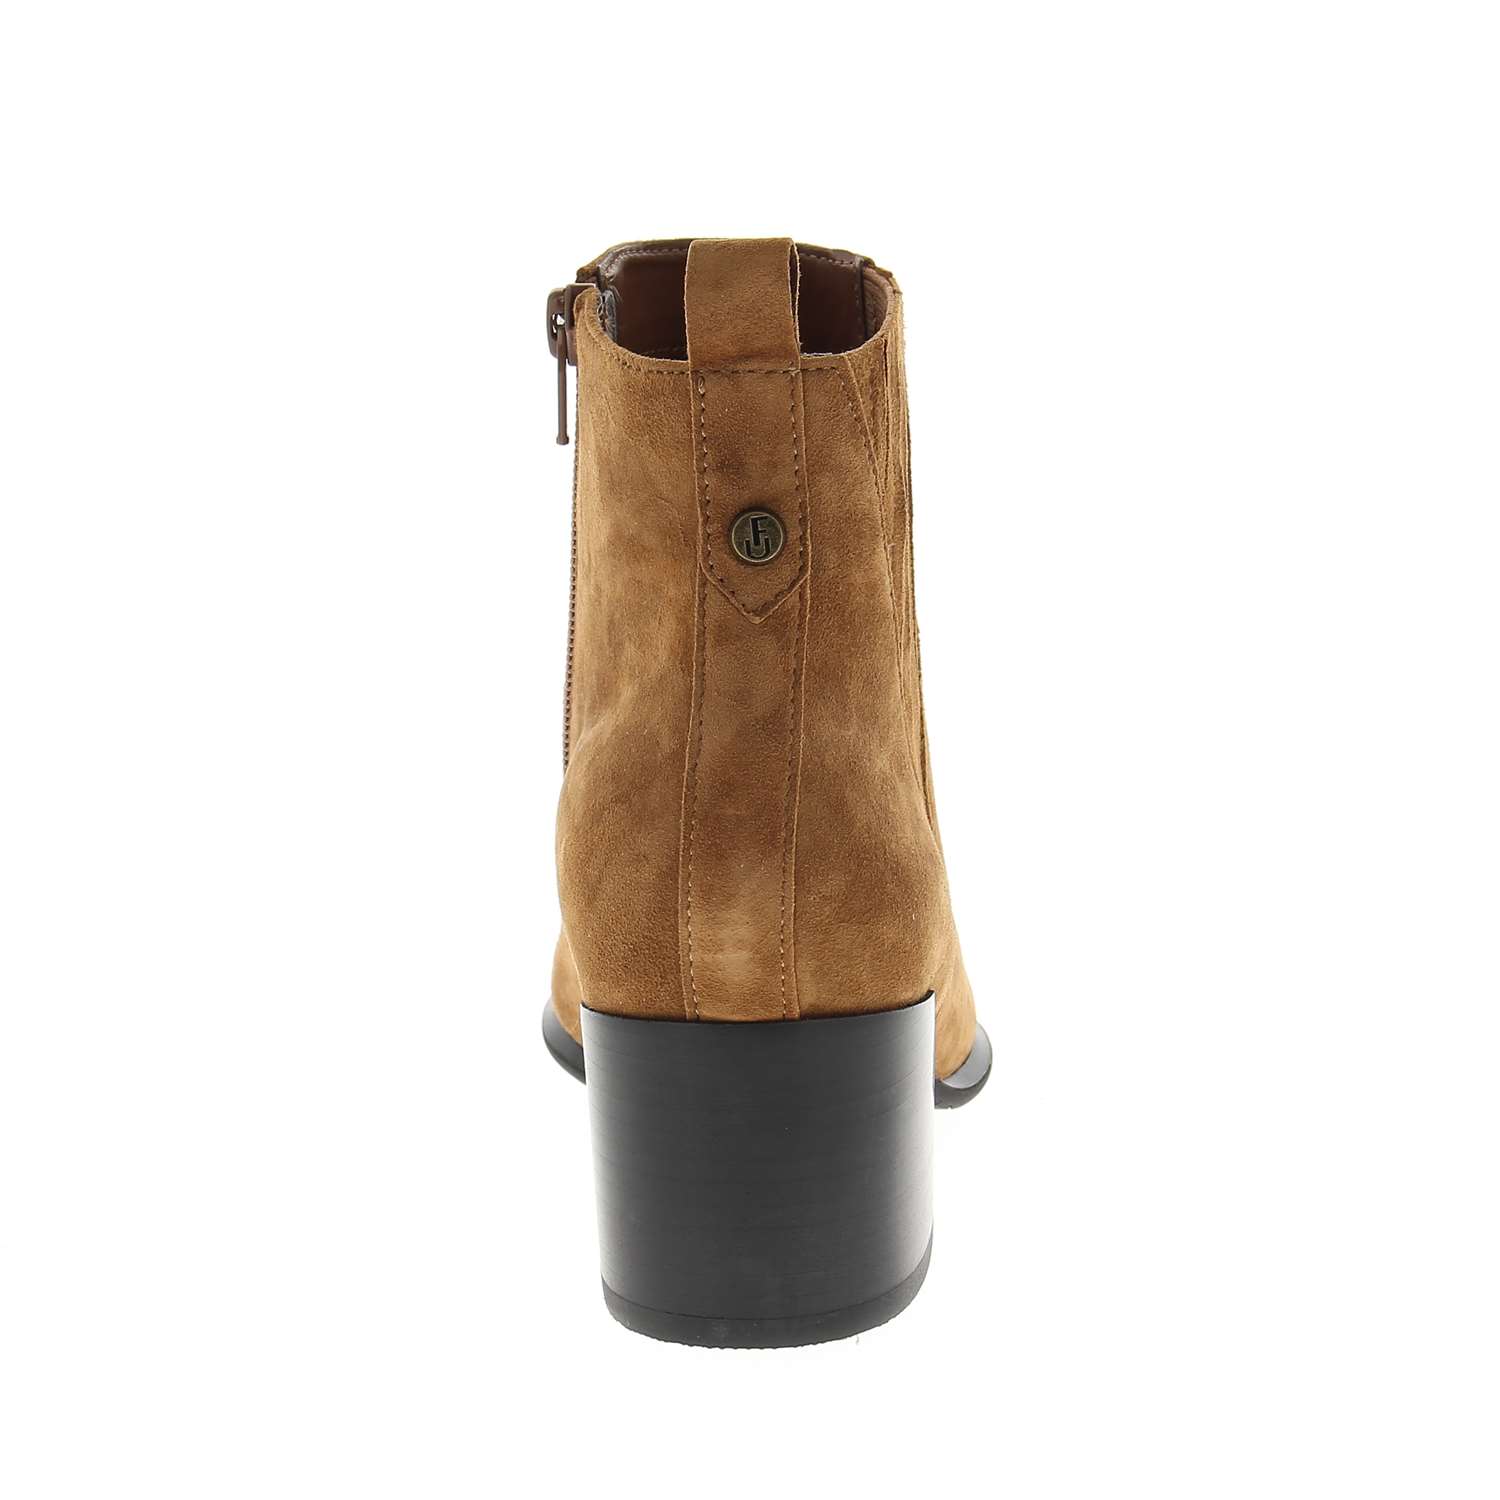 04 - FLAK - FUGITIVE - Boots et bottines - Croûte de cuir